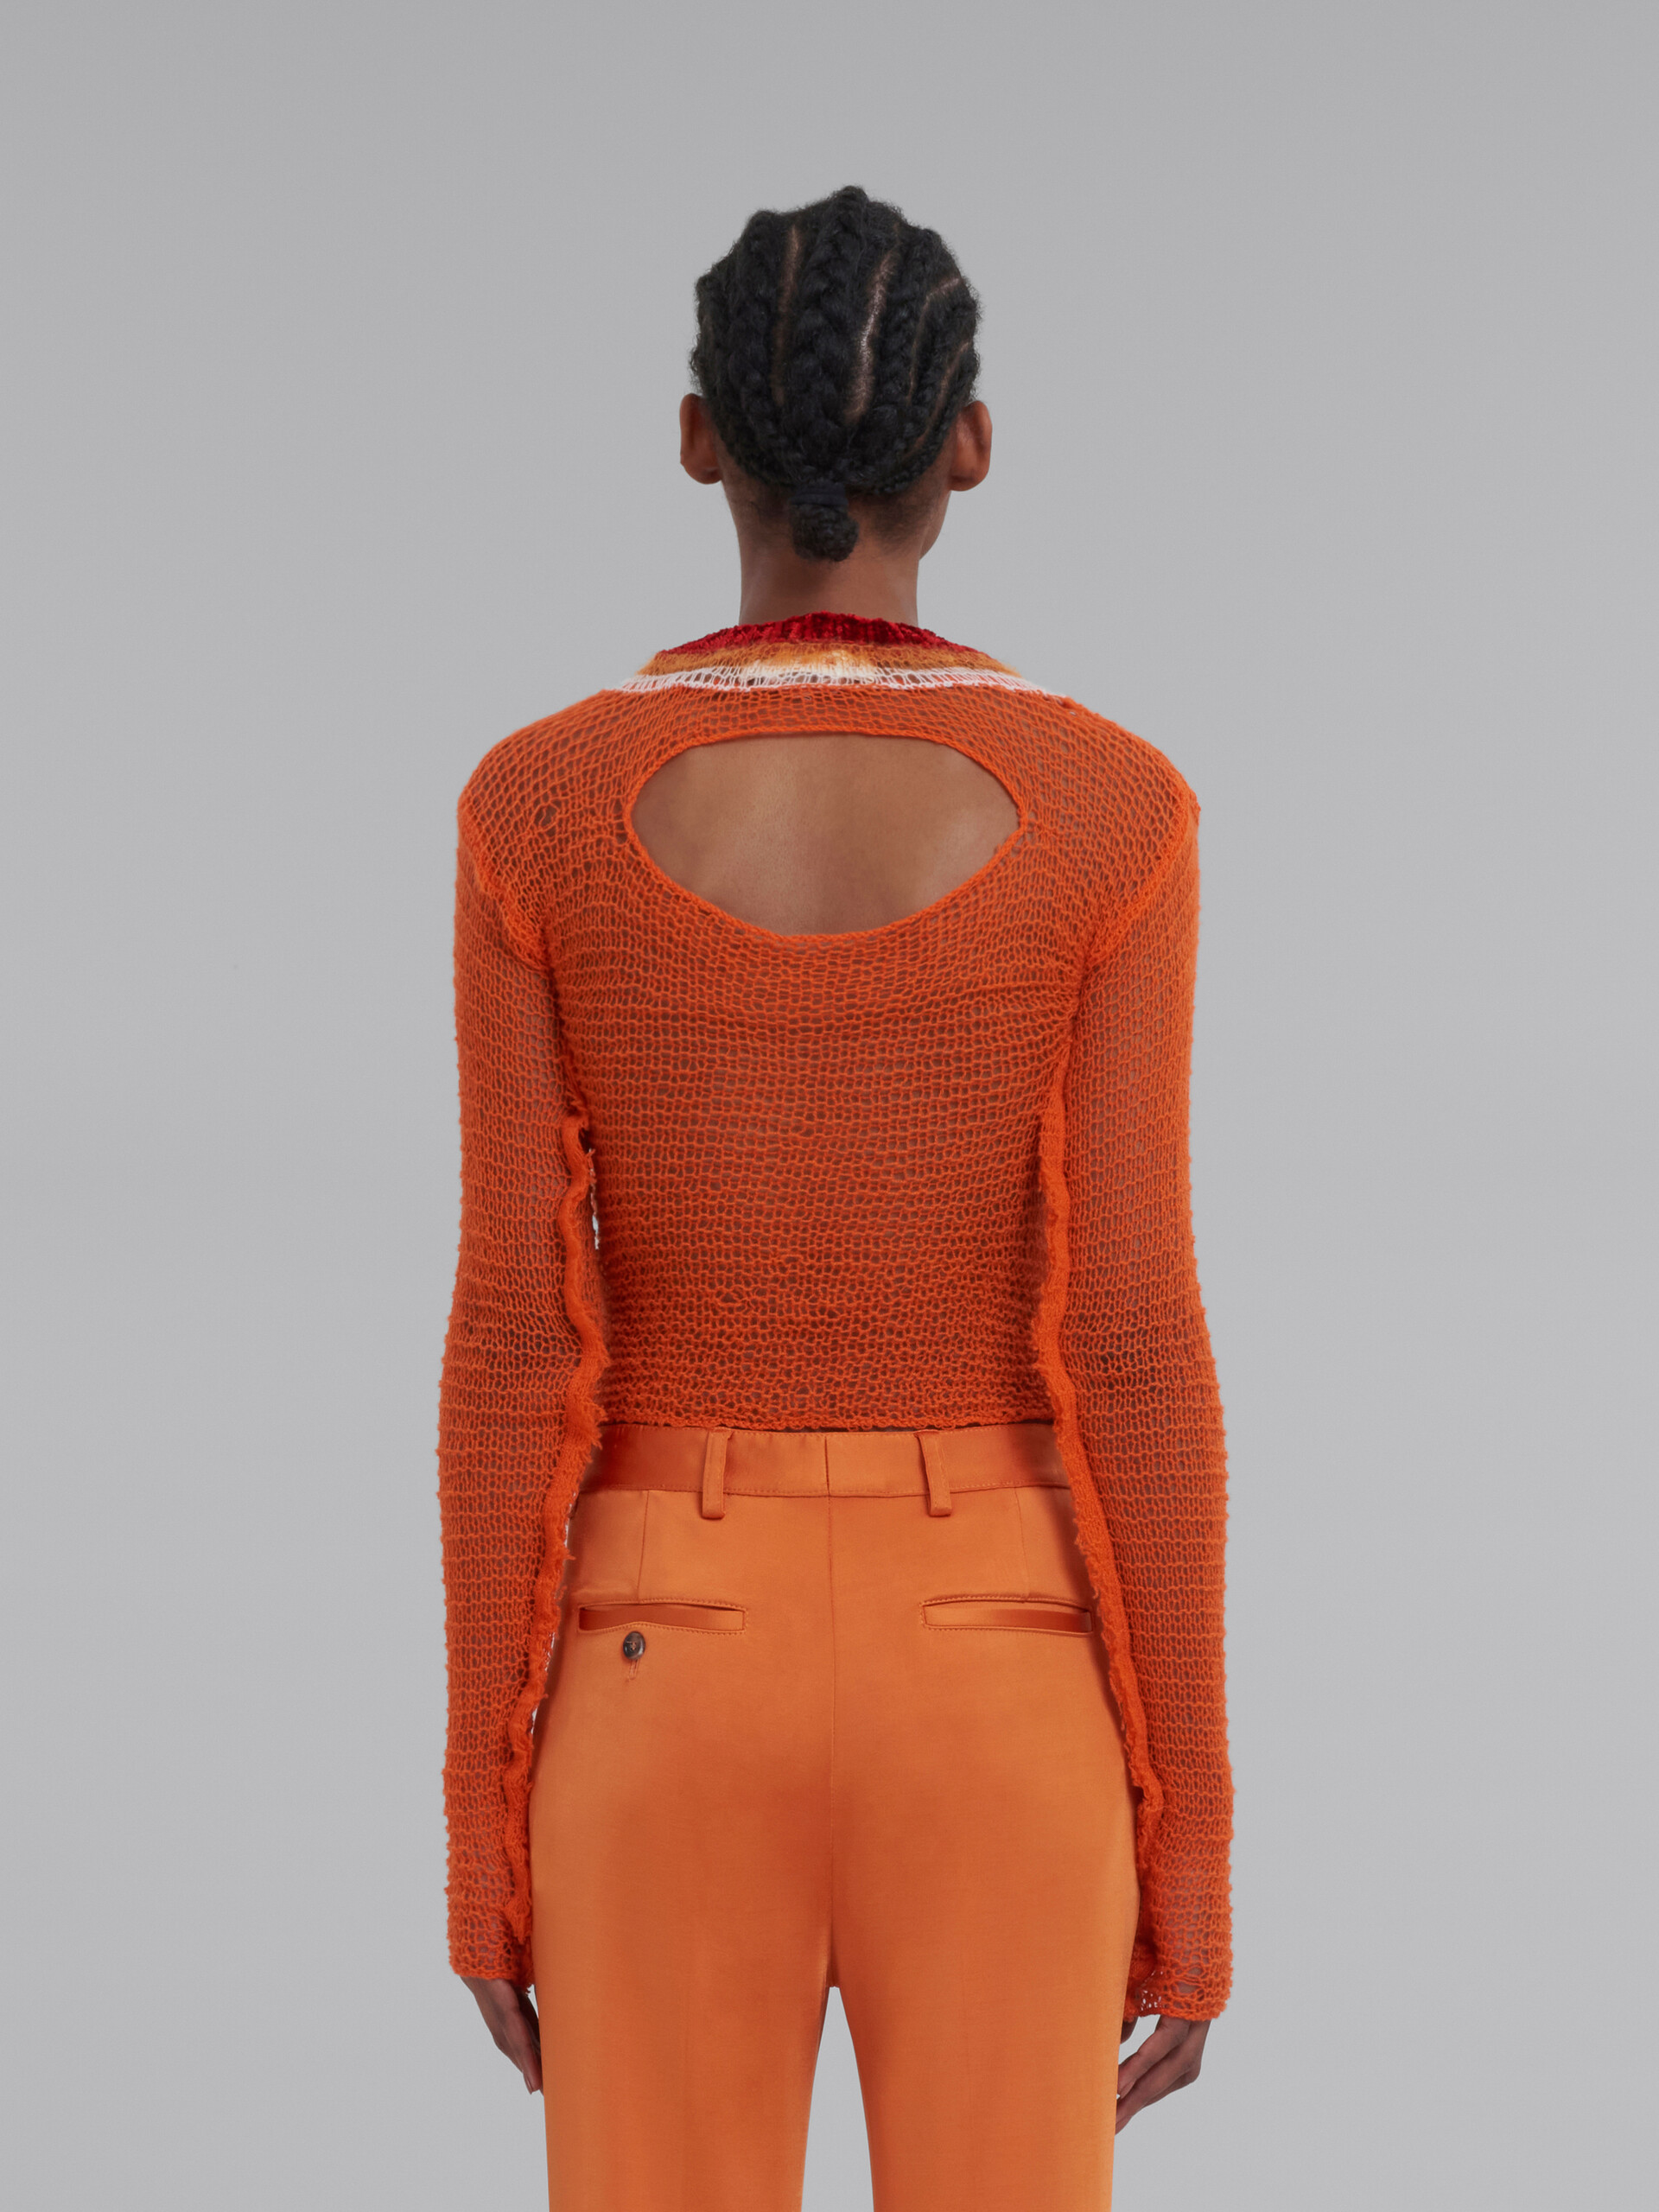 Jersey naranja de malla de cachemira y lana con recorte - jerseys - Image 3